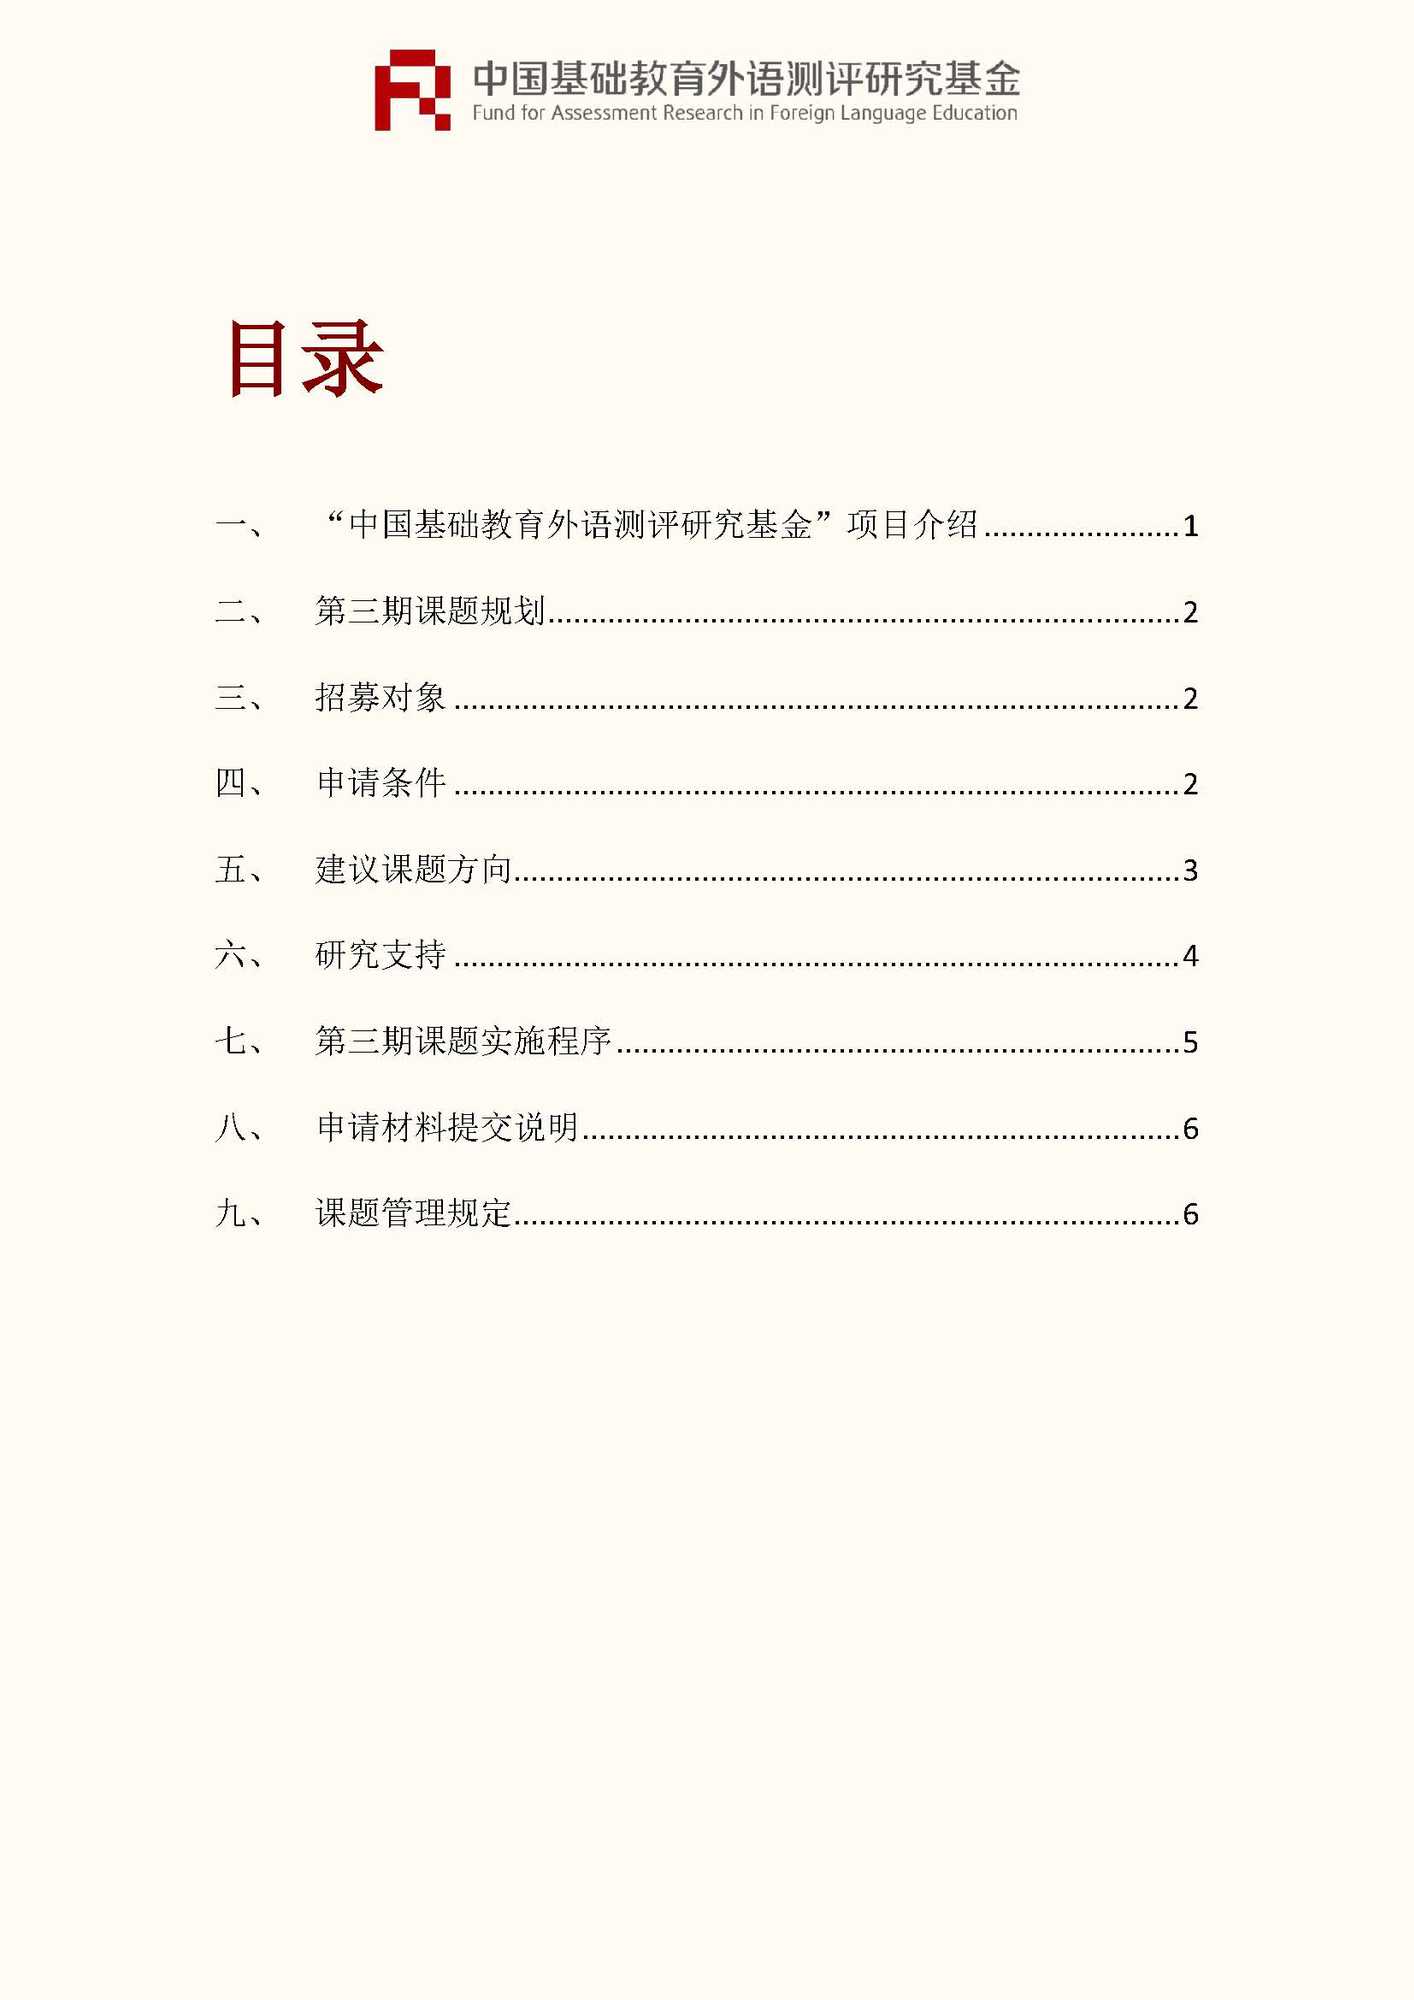 文件1：“中国基础教育外语测评研究基金”第三期课题申报指南_页面_02